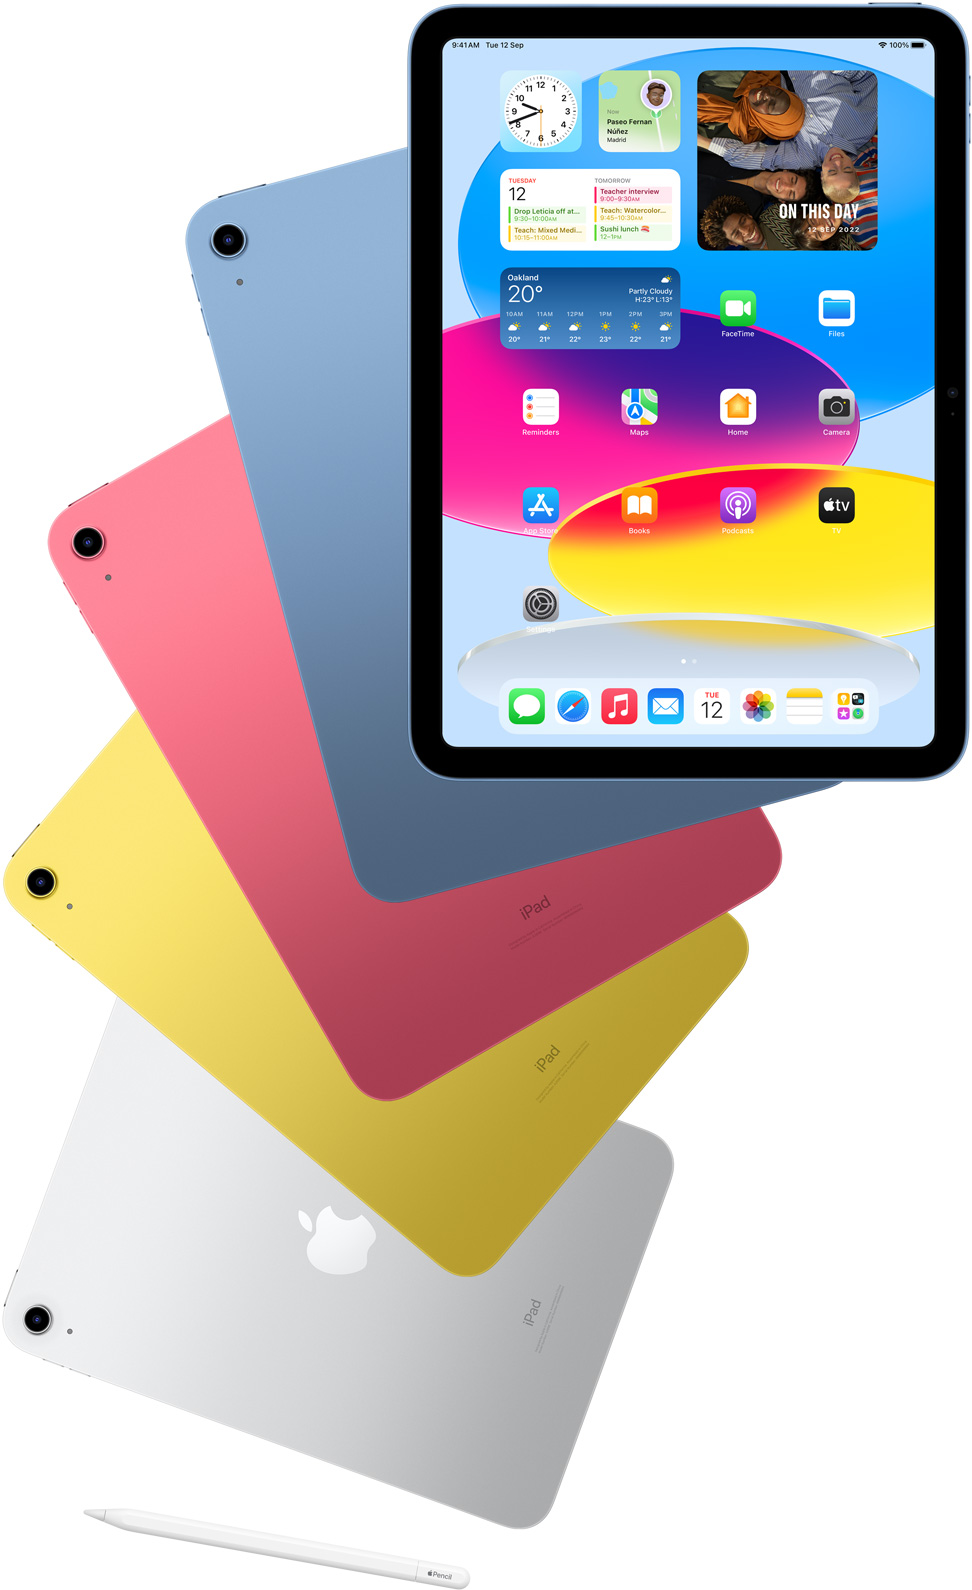 iPad 展示主畫面的正面圖，後方展示藍色、粉紅色、黃色和銀色 iPad 的機背。在這幾款排列好的 iPad 附近，同時展示 Apple Pencil。